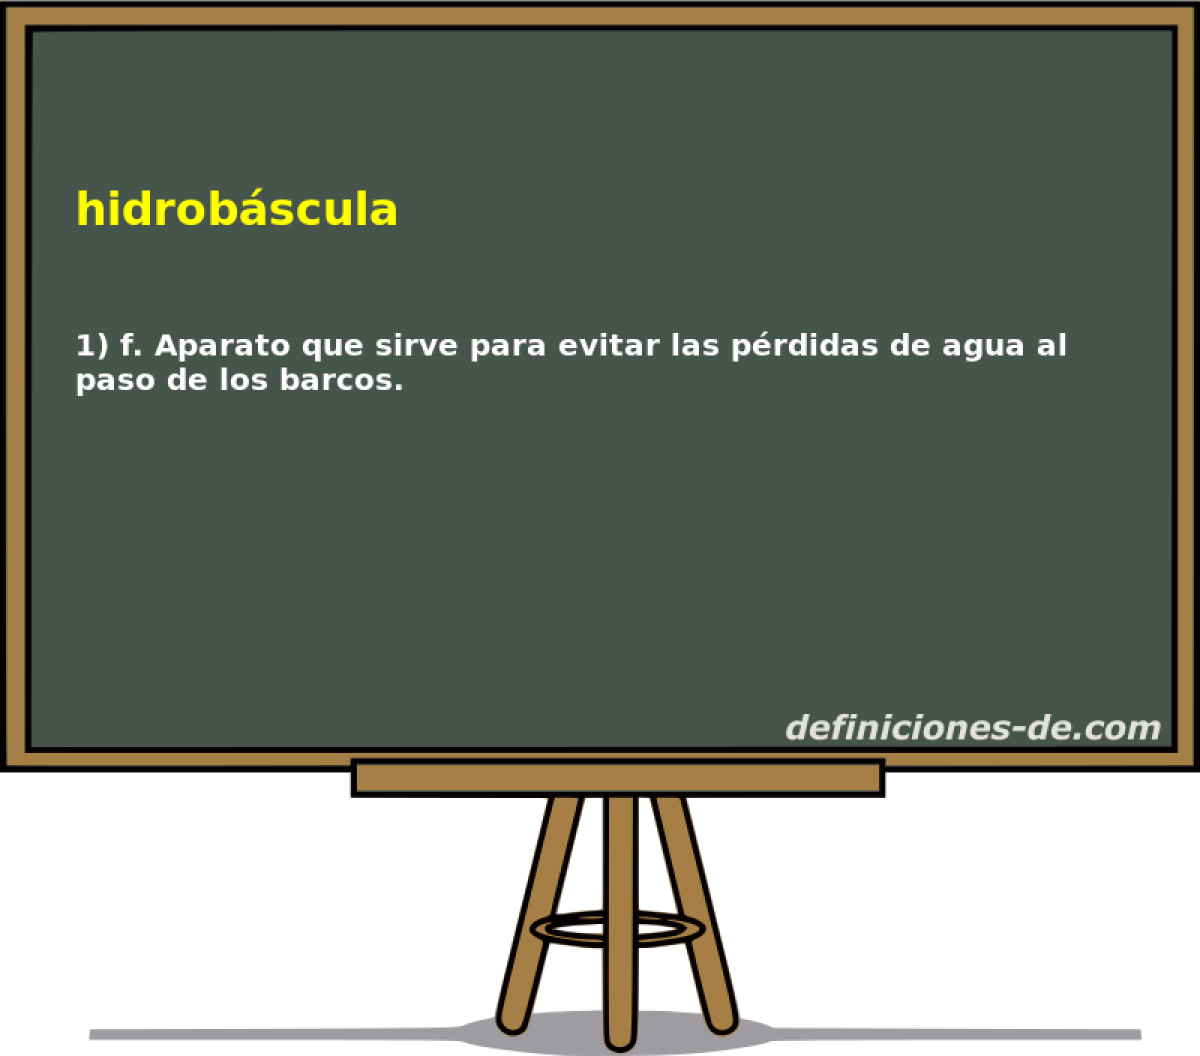 hidrobscula 